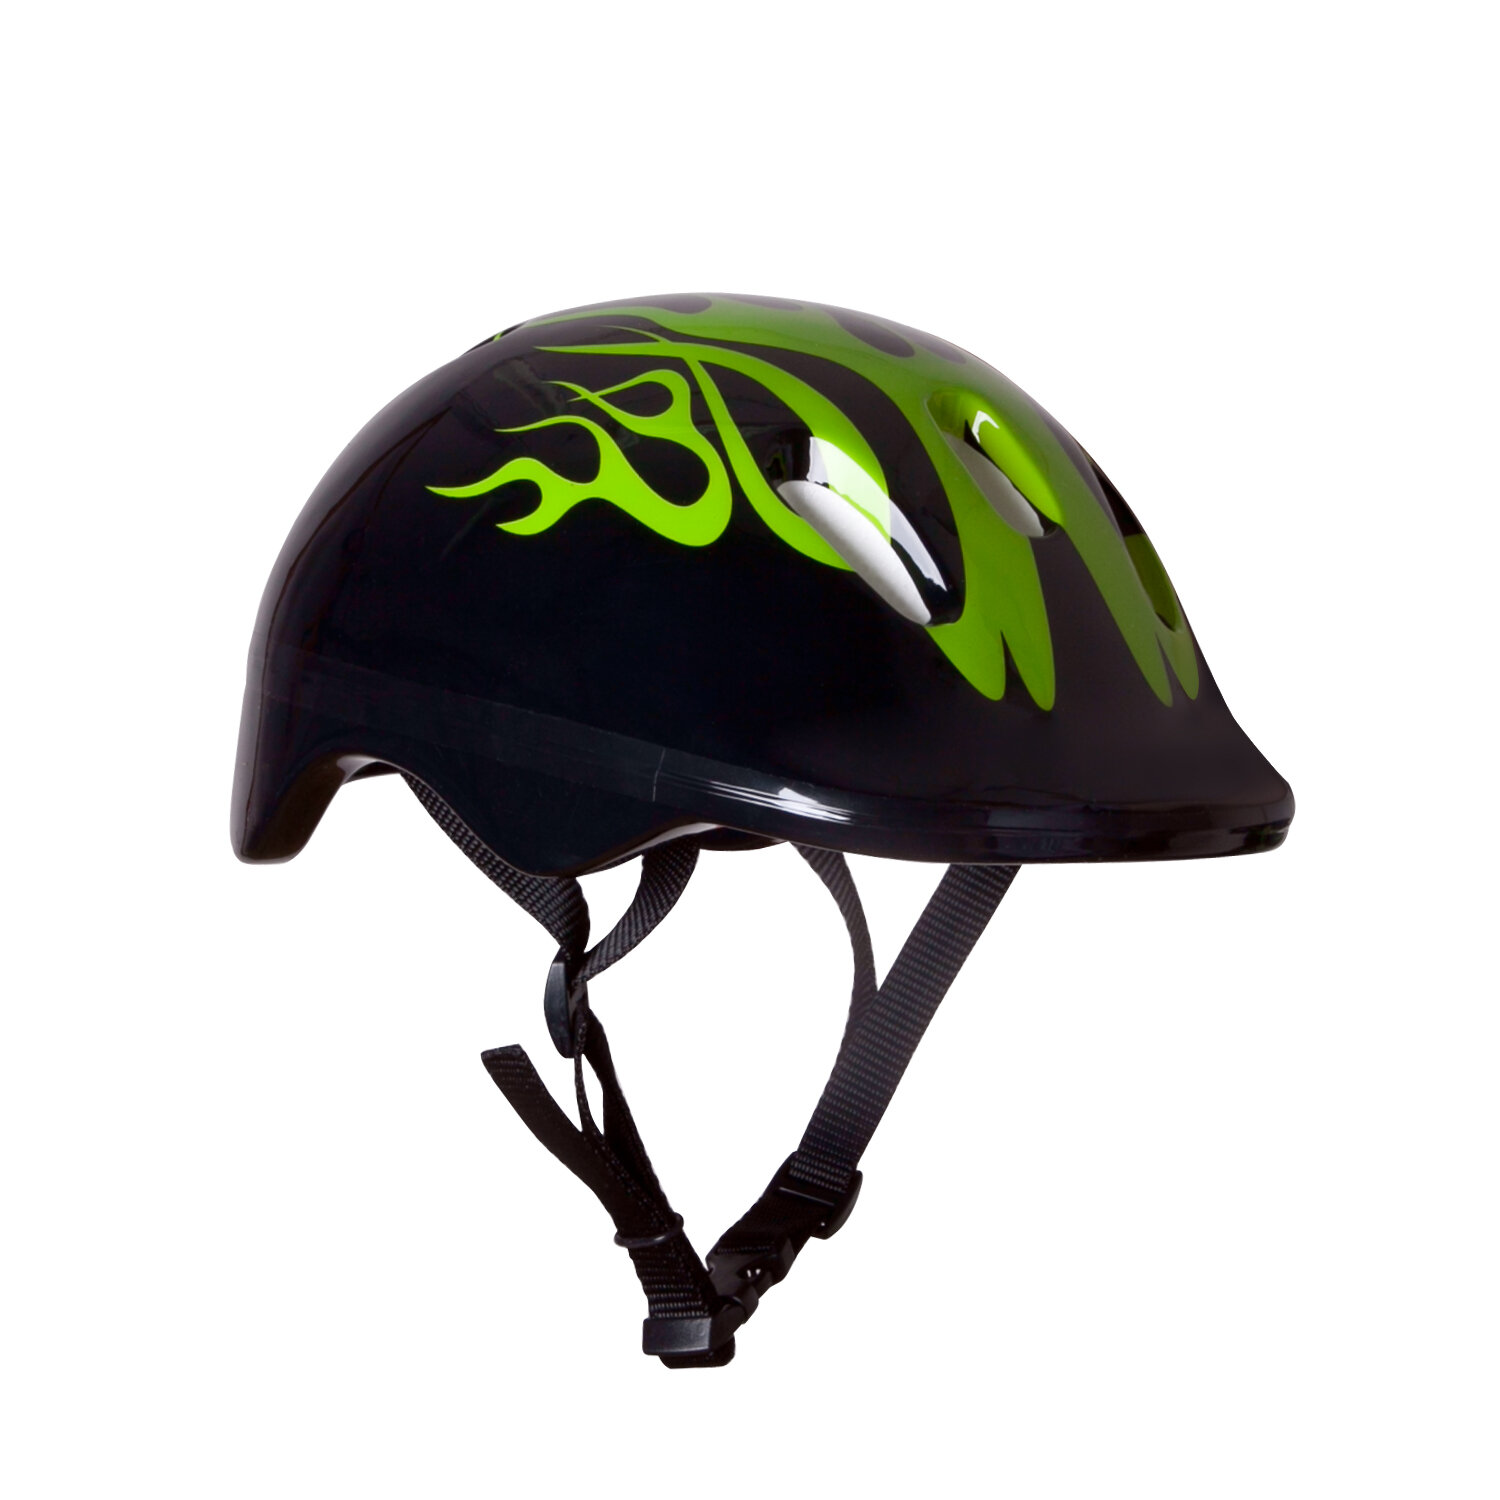 Шлем детский Rgx Fcb-6x-64 с регулировкой размера (s(50-52)) размер S (50-52)